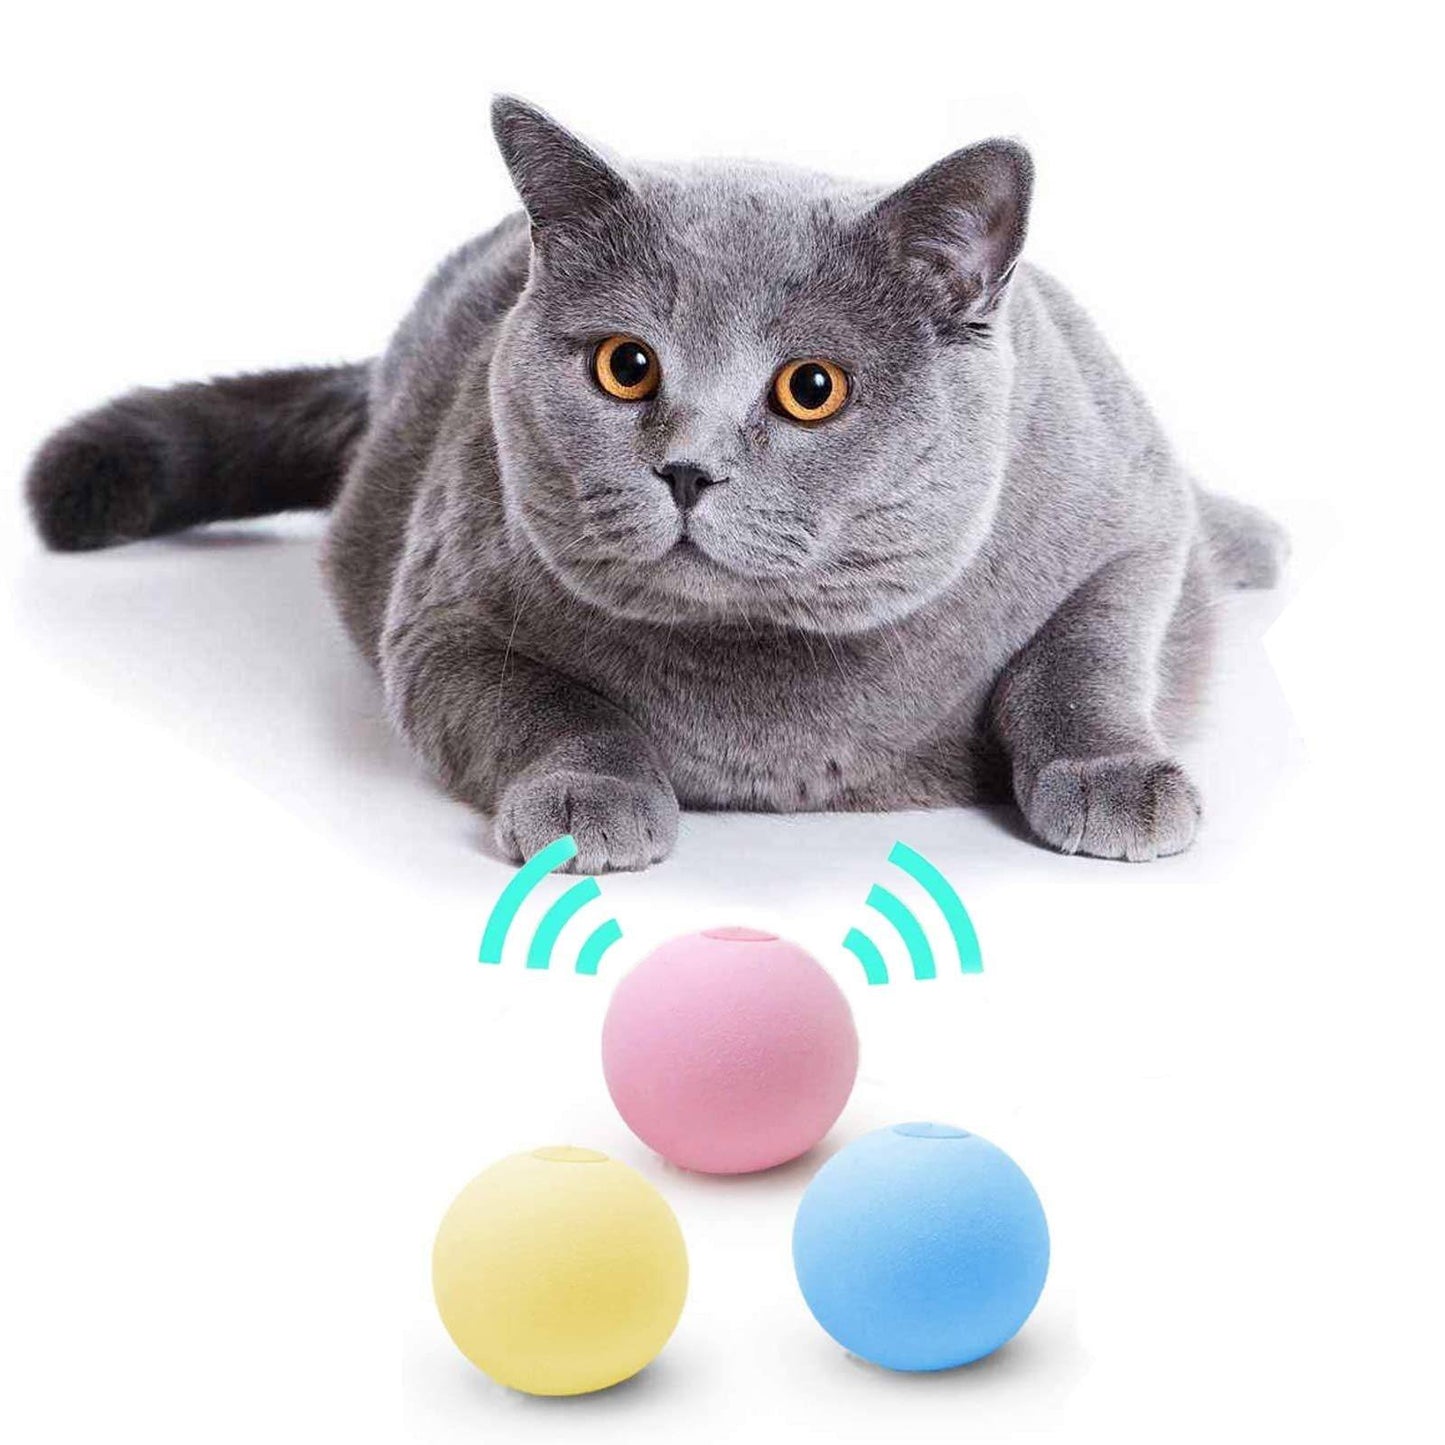 SmartBall™ - Balle intelligente d'apprentissage pour chat